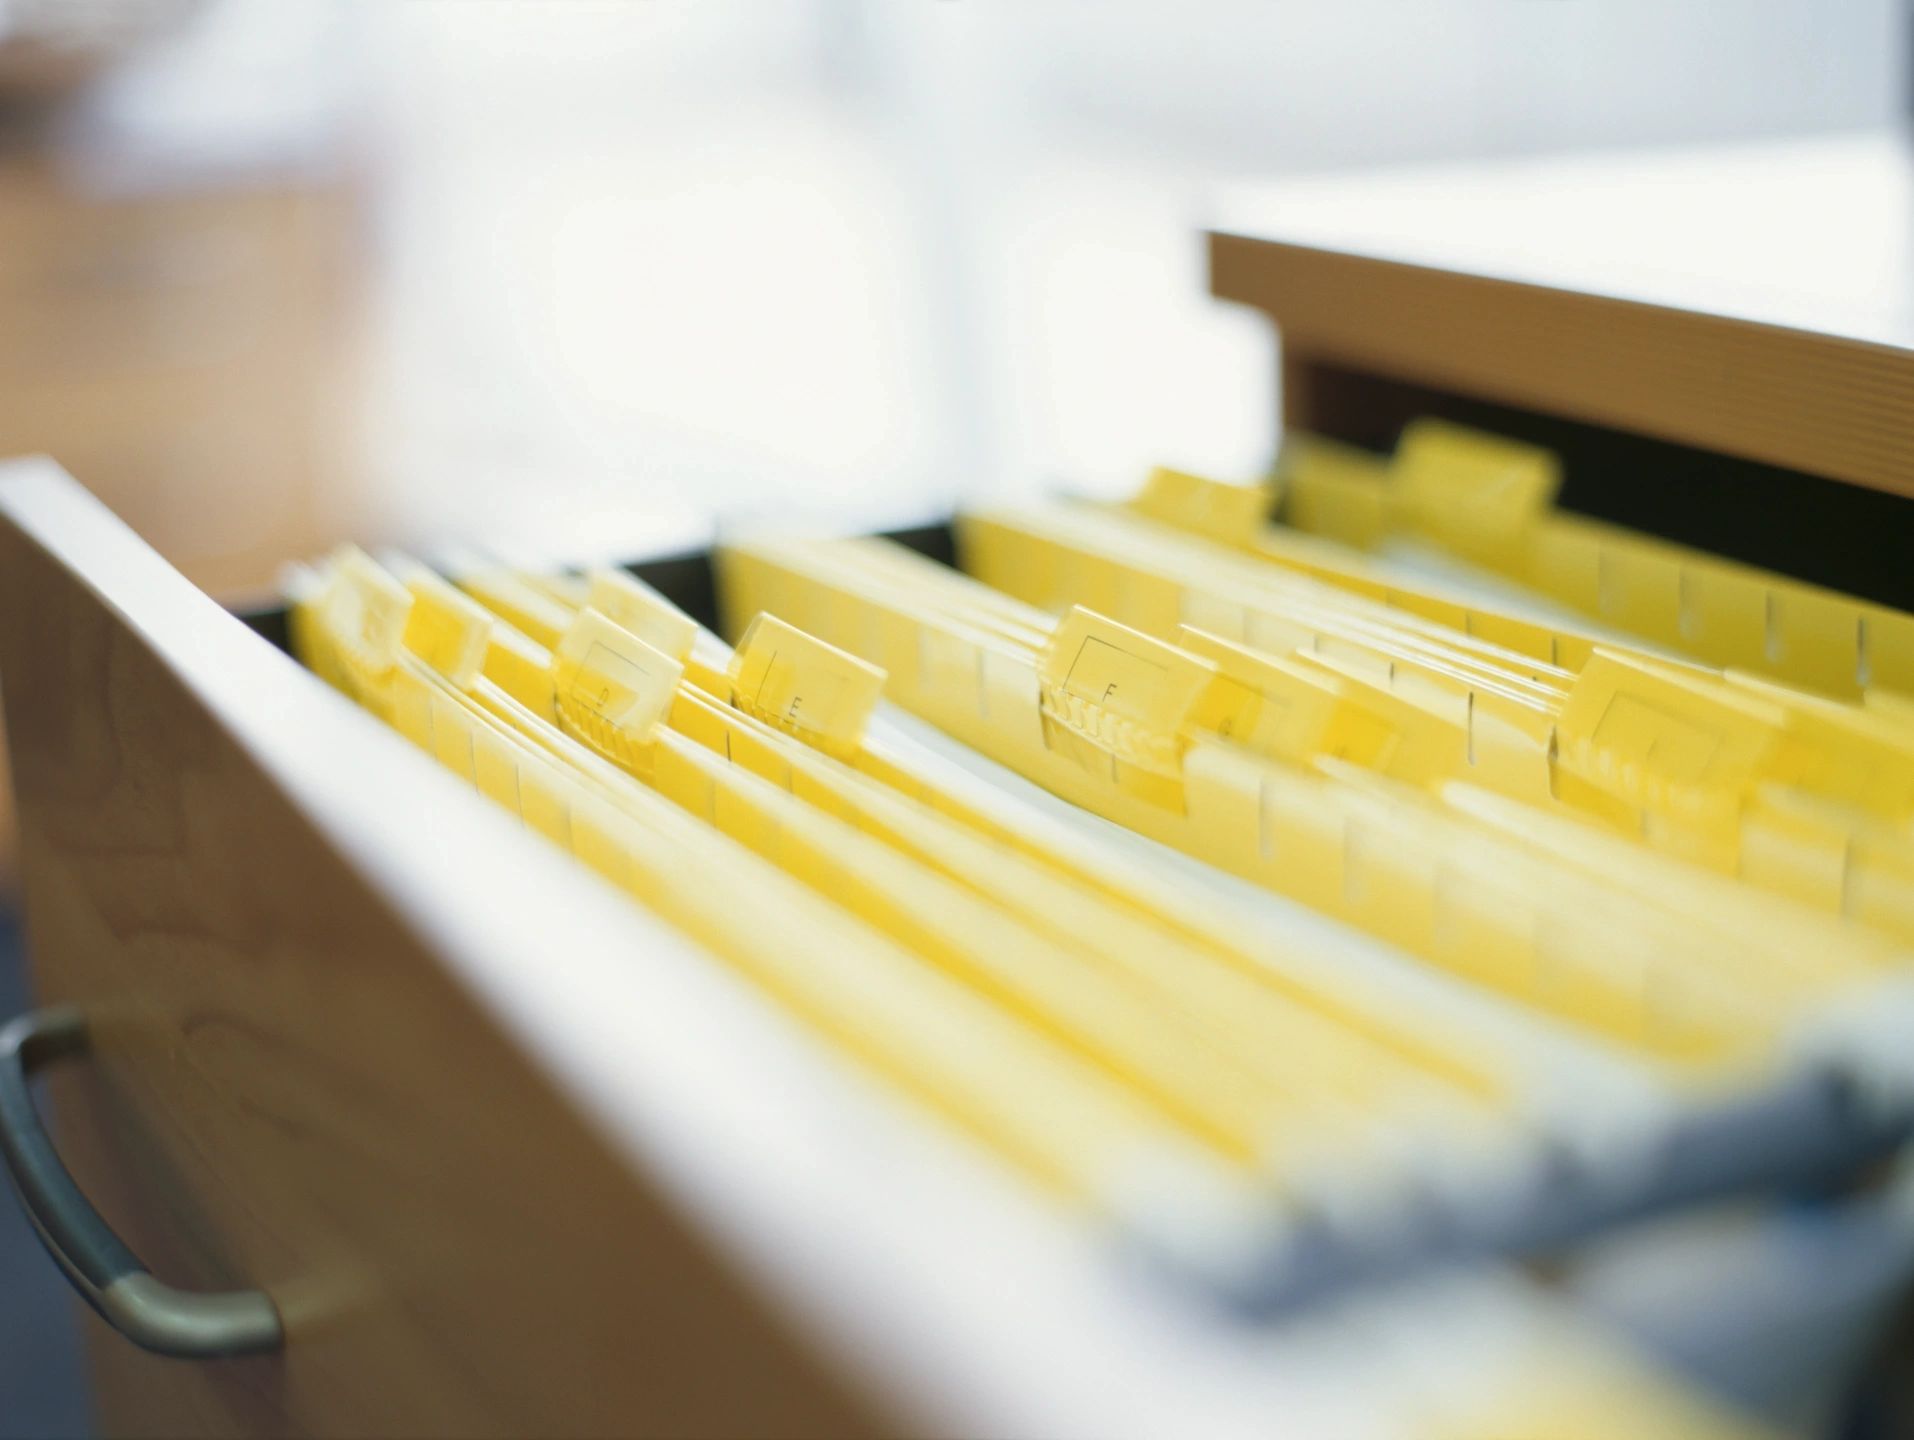 open filing cabinet showing file folders alphabetized